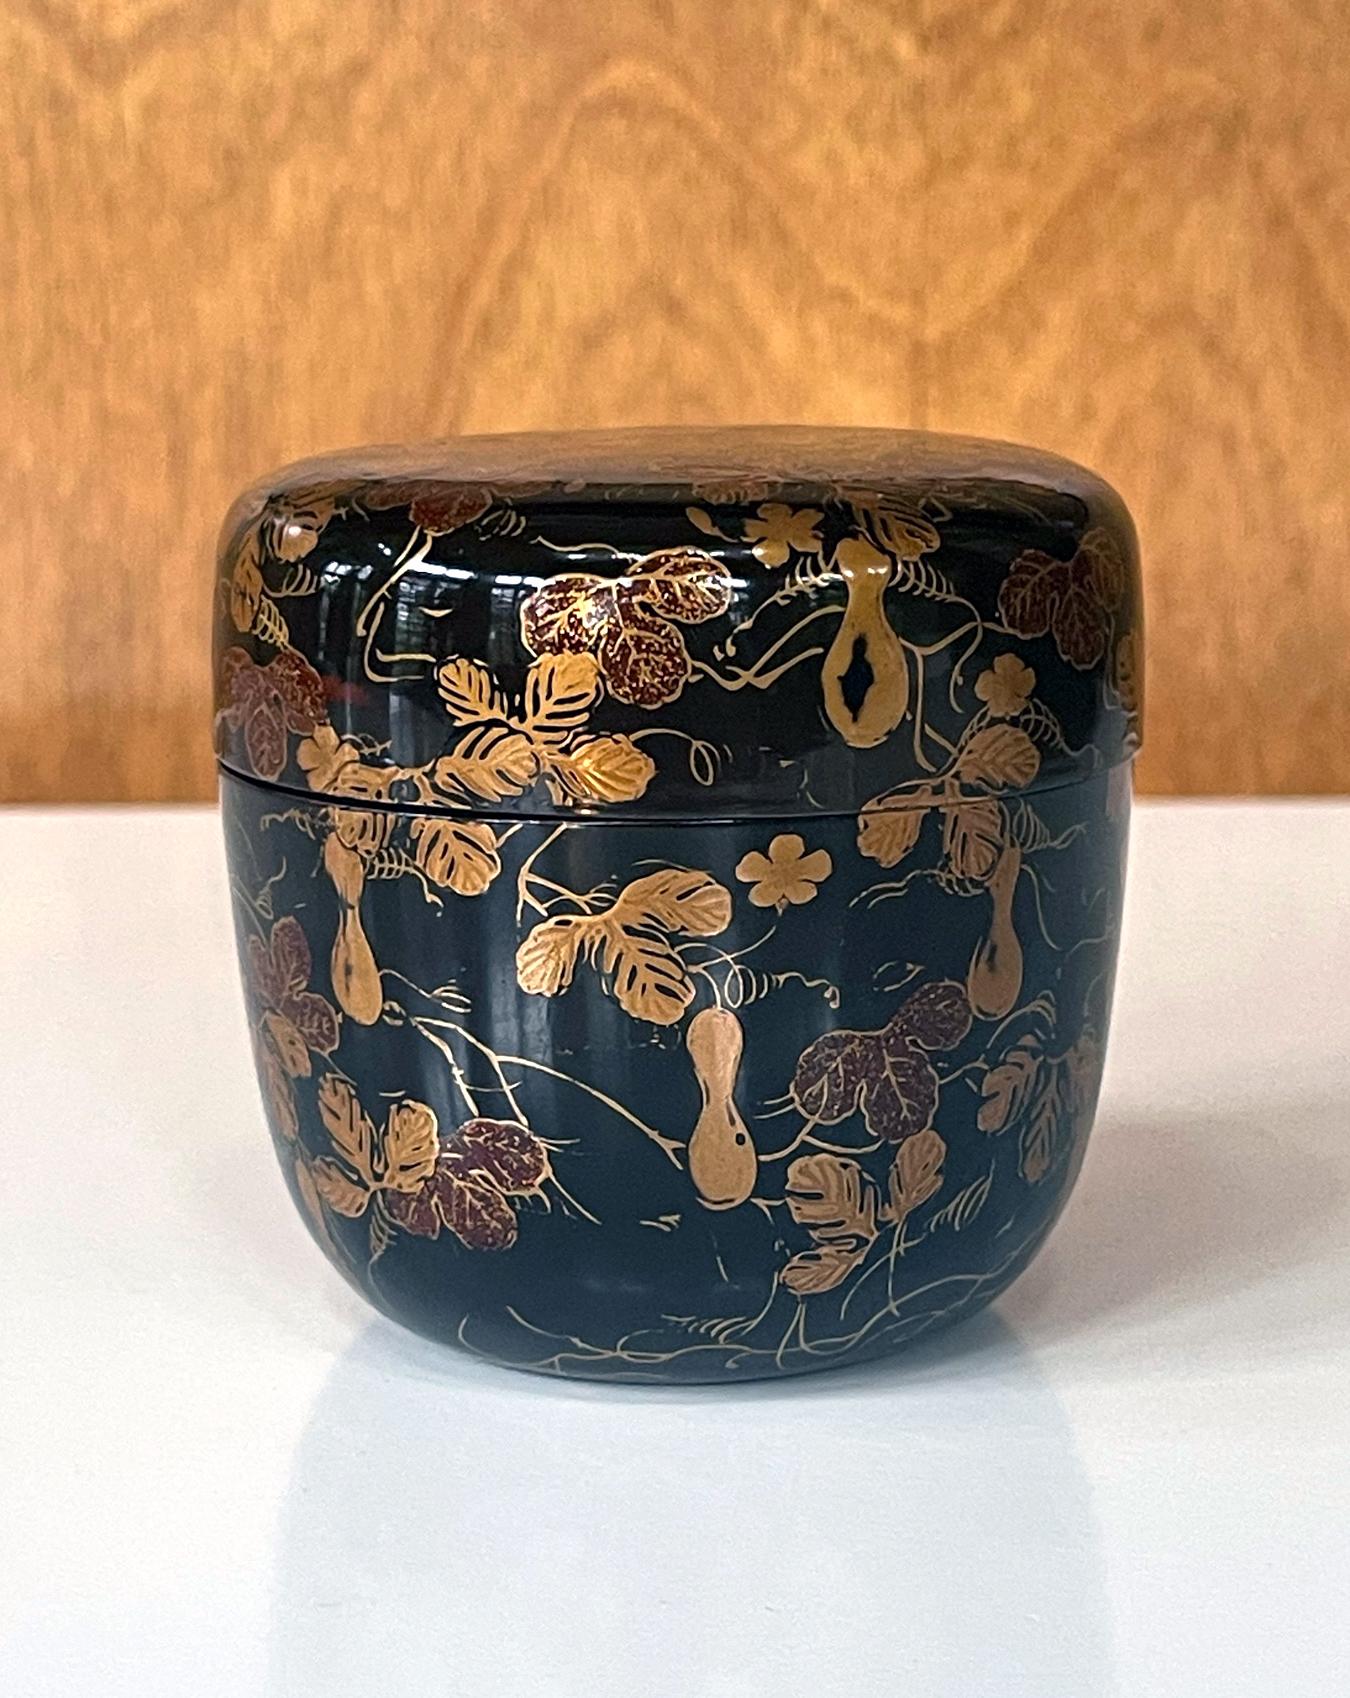 Eine japanische lackierte Teedose (bekannt als Natsume) mit feinem Maki-e-Dekor, ca. 18-19. Jahrhundert, Edo bis Meiji-Periode. Die großformatige Natsume mit aufgesetztem Deckel, manchmal auch Usuchaki genannt, wurde traditionell zur Aufbewahrung